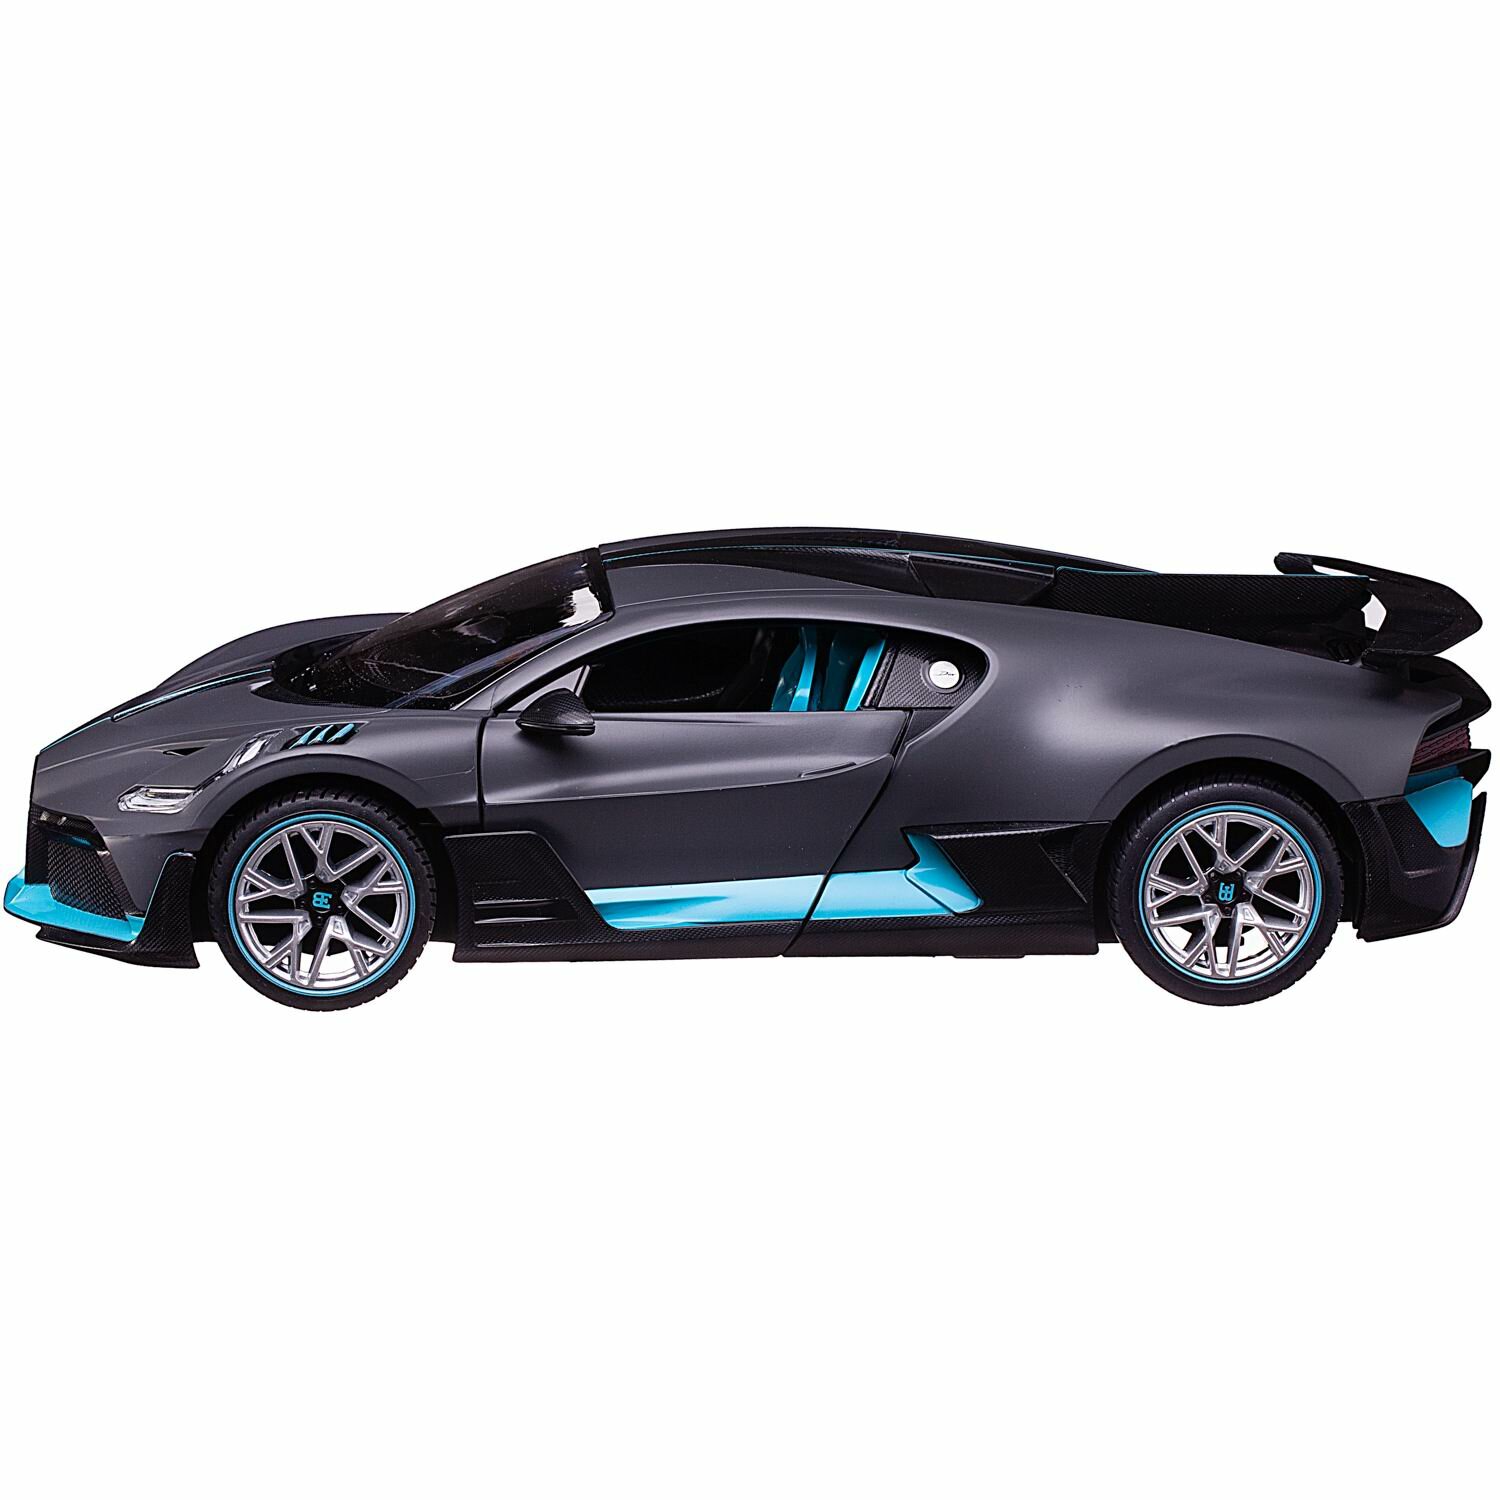 Машина р/у 1:14 Bugatti Divo, 2,4G, цвет серый, фары светятся, двери открываются в ручную, 33*15.7*8.8